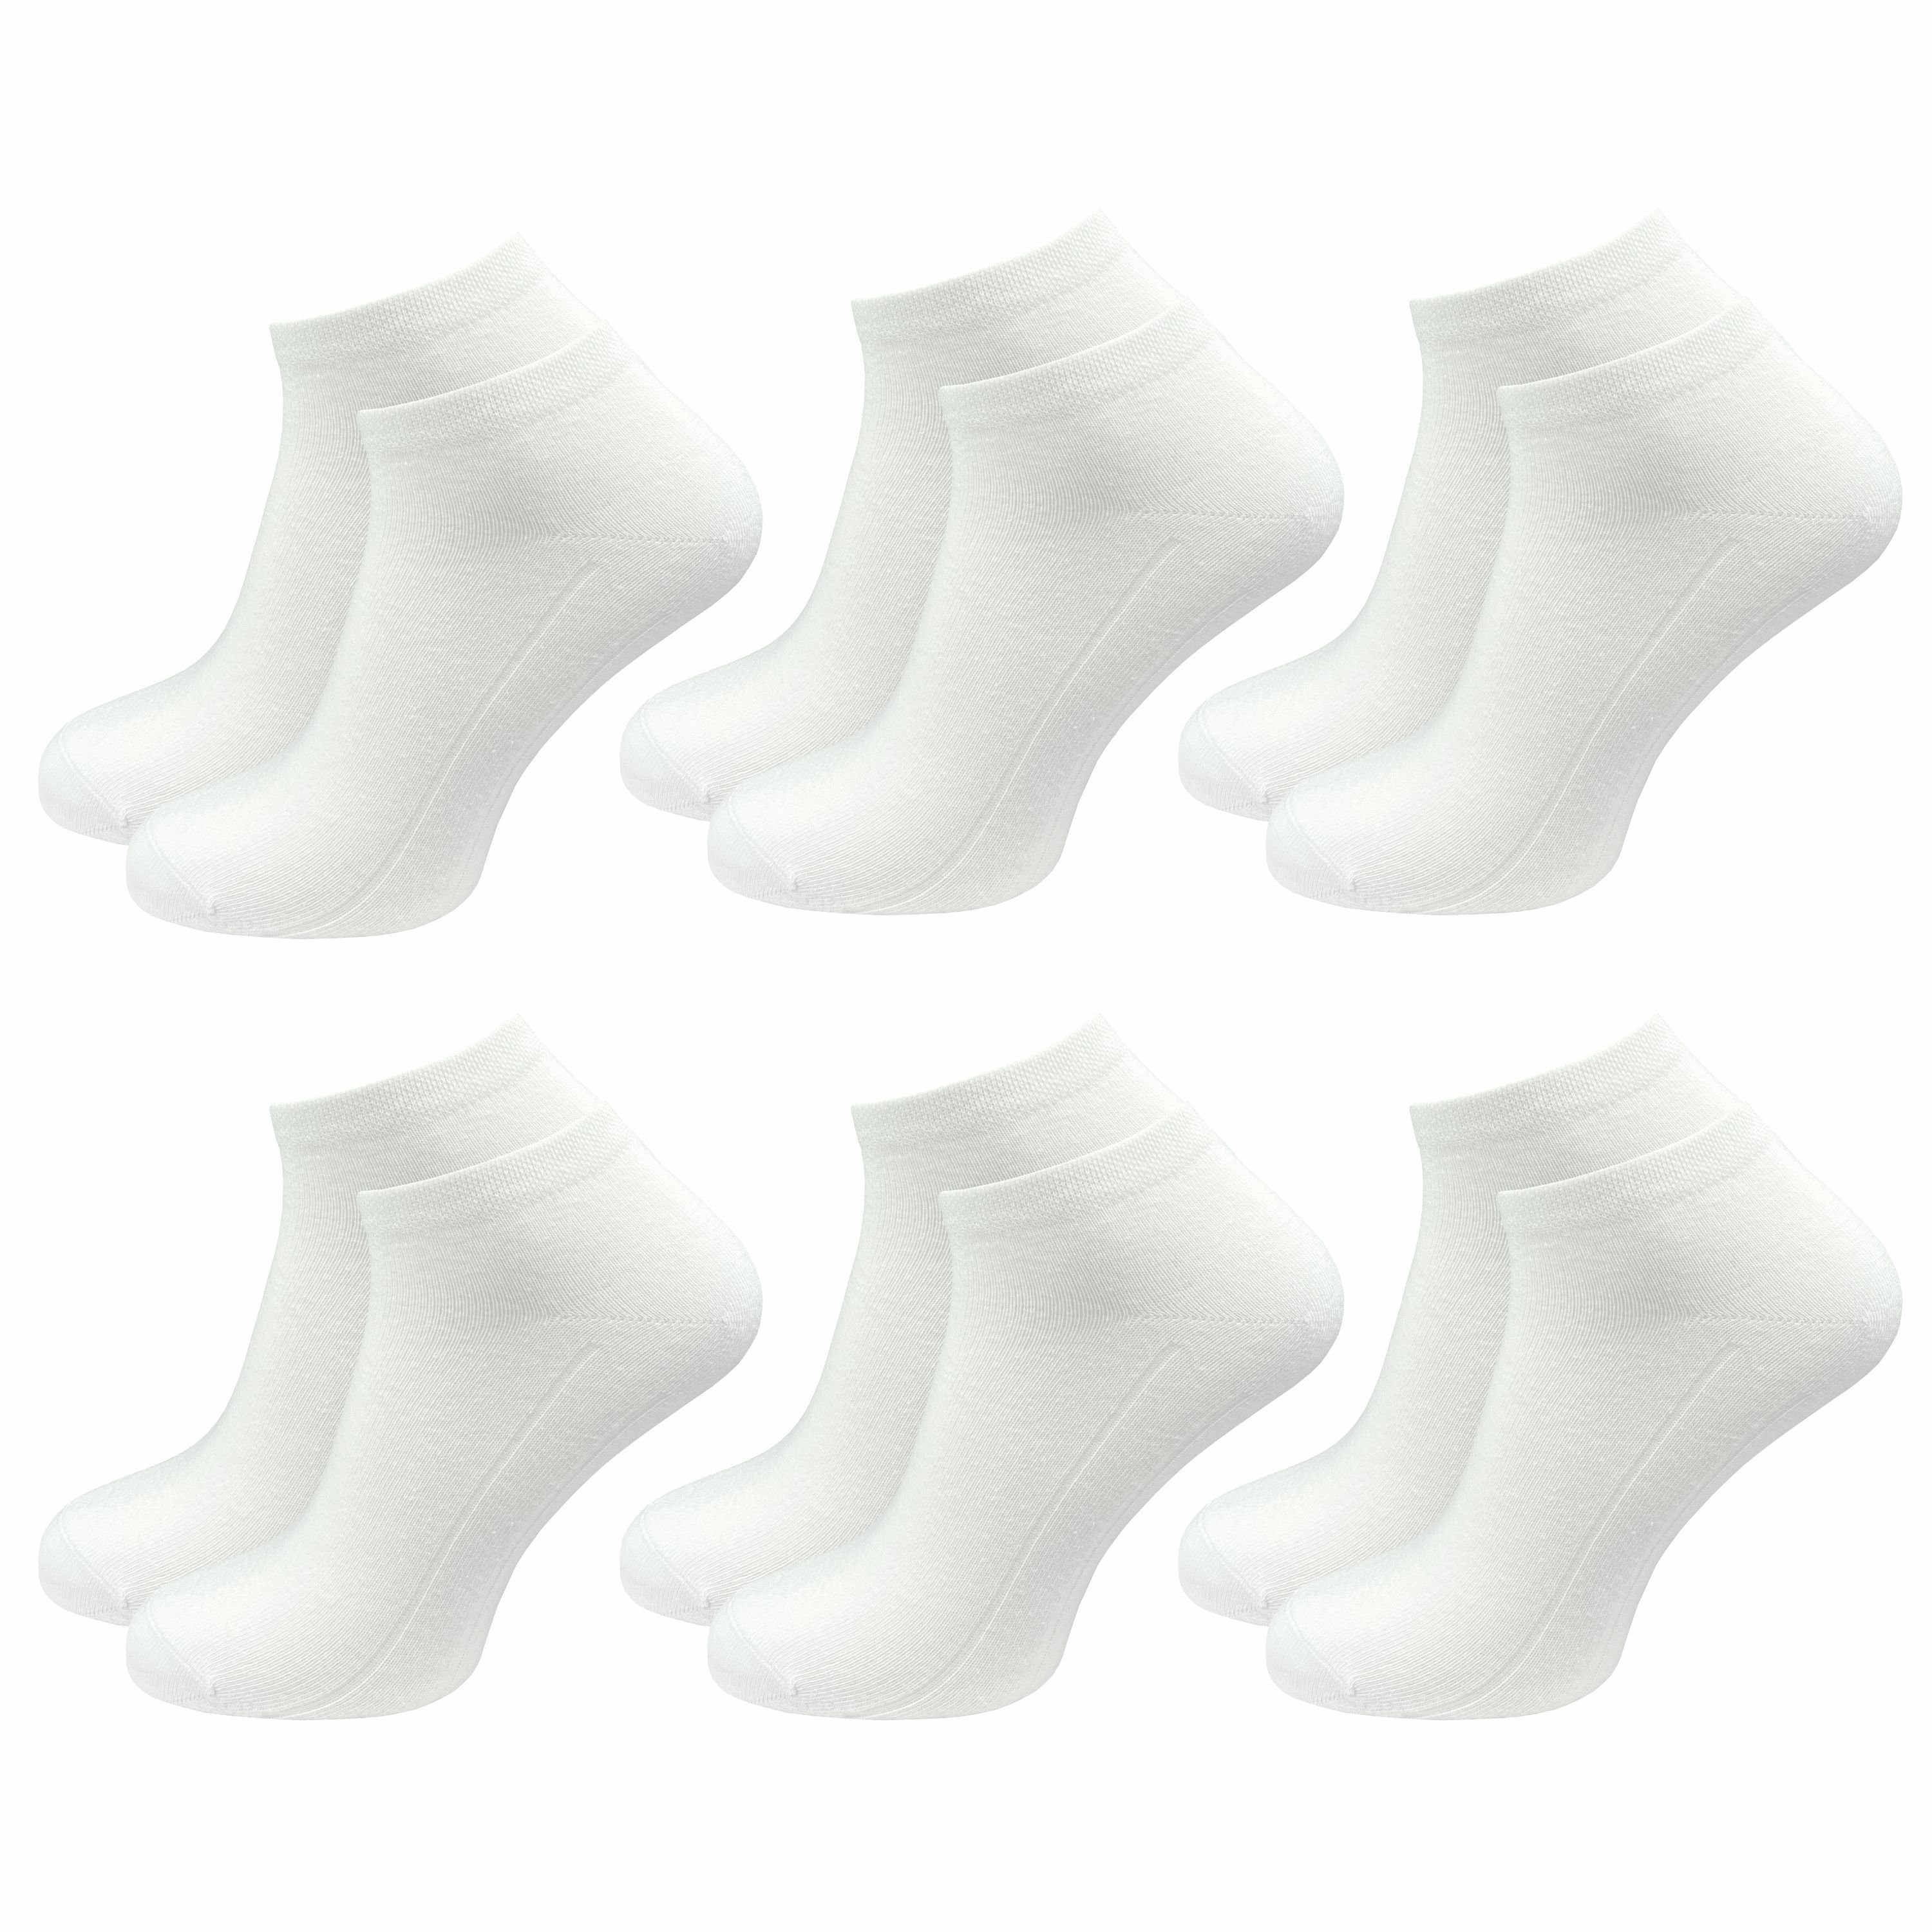 GAWILO Sneakersocken für Damen in weiß und schwarz, Ohne drückende Zehennaht, Extra Weich (6 Paar) Kurze Socken ideal zur Kombination mit Turnschuhen und Sneakern